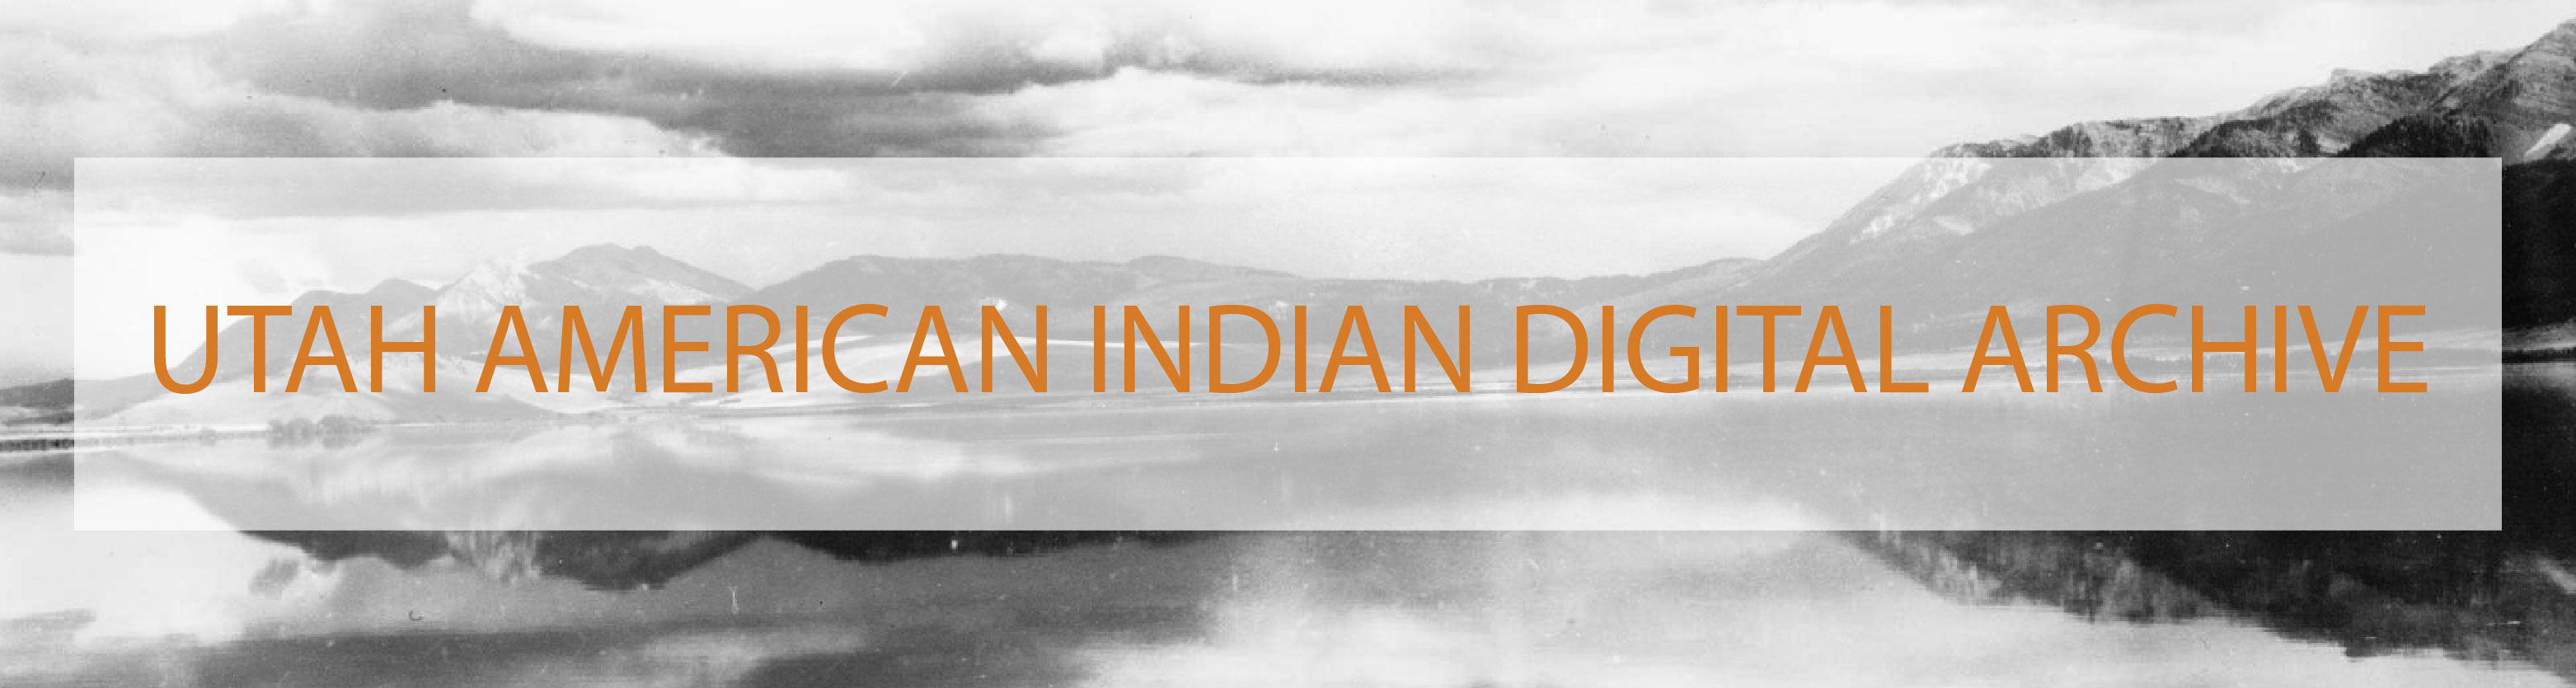 Utah American Indian Digital Archive 